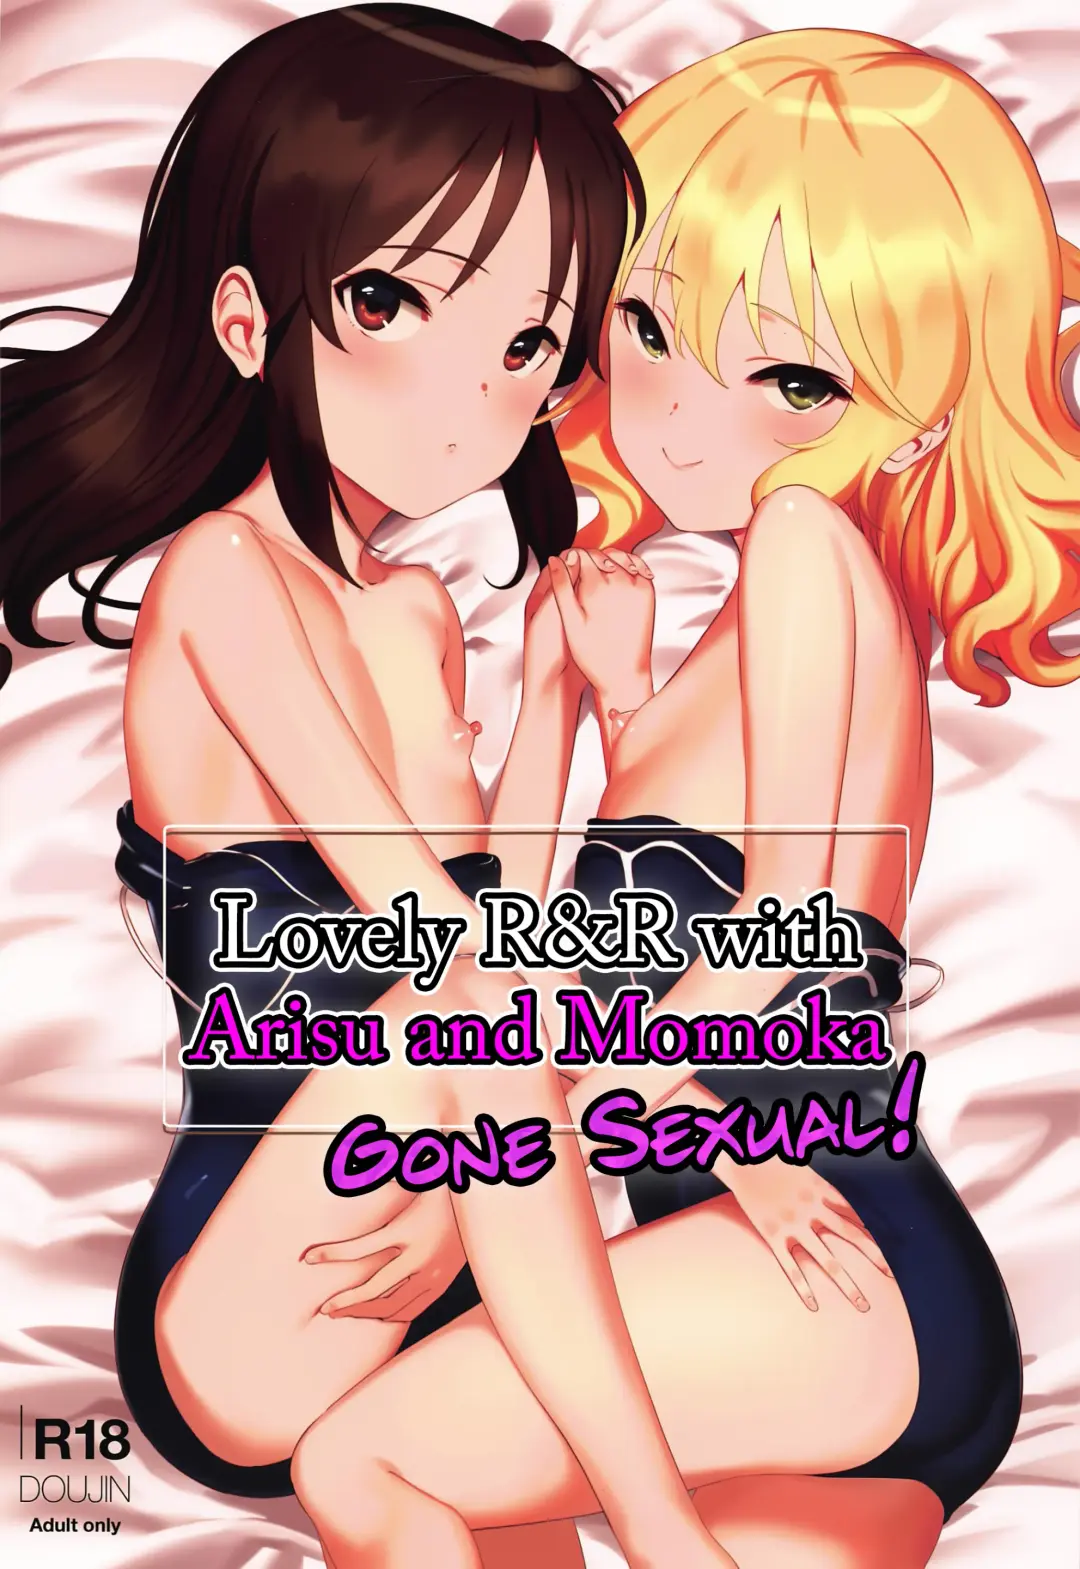 Read [Pettanp] Tsukarehatete Kaettara Arisu to Momoka ga Seiteki ni Iyashimakutte kuremashita. | Lovely R&R with Arisu and Momoka, Gone Sexual! - Fhentai.net